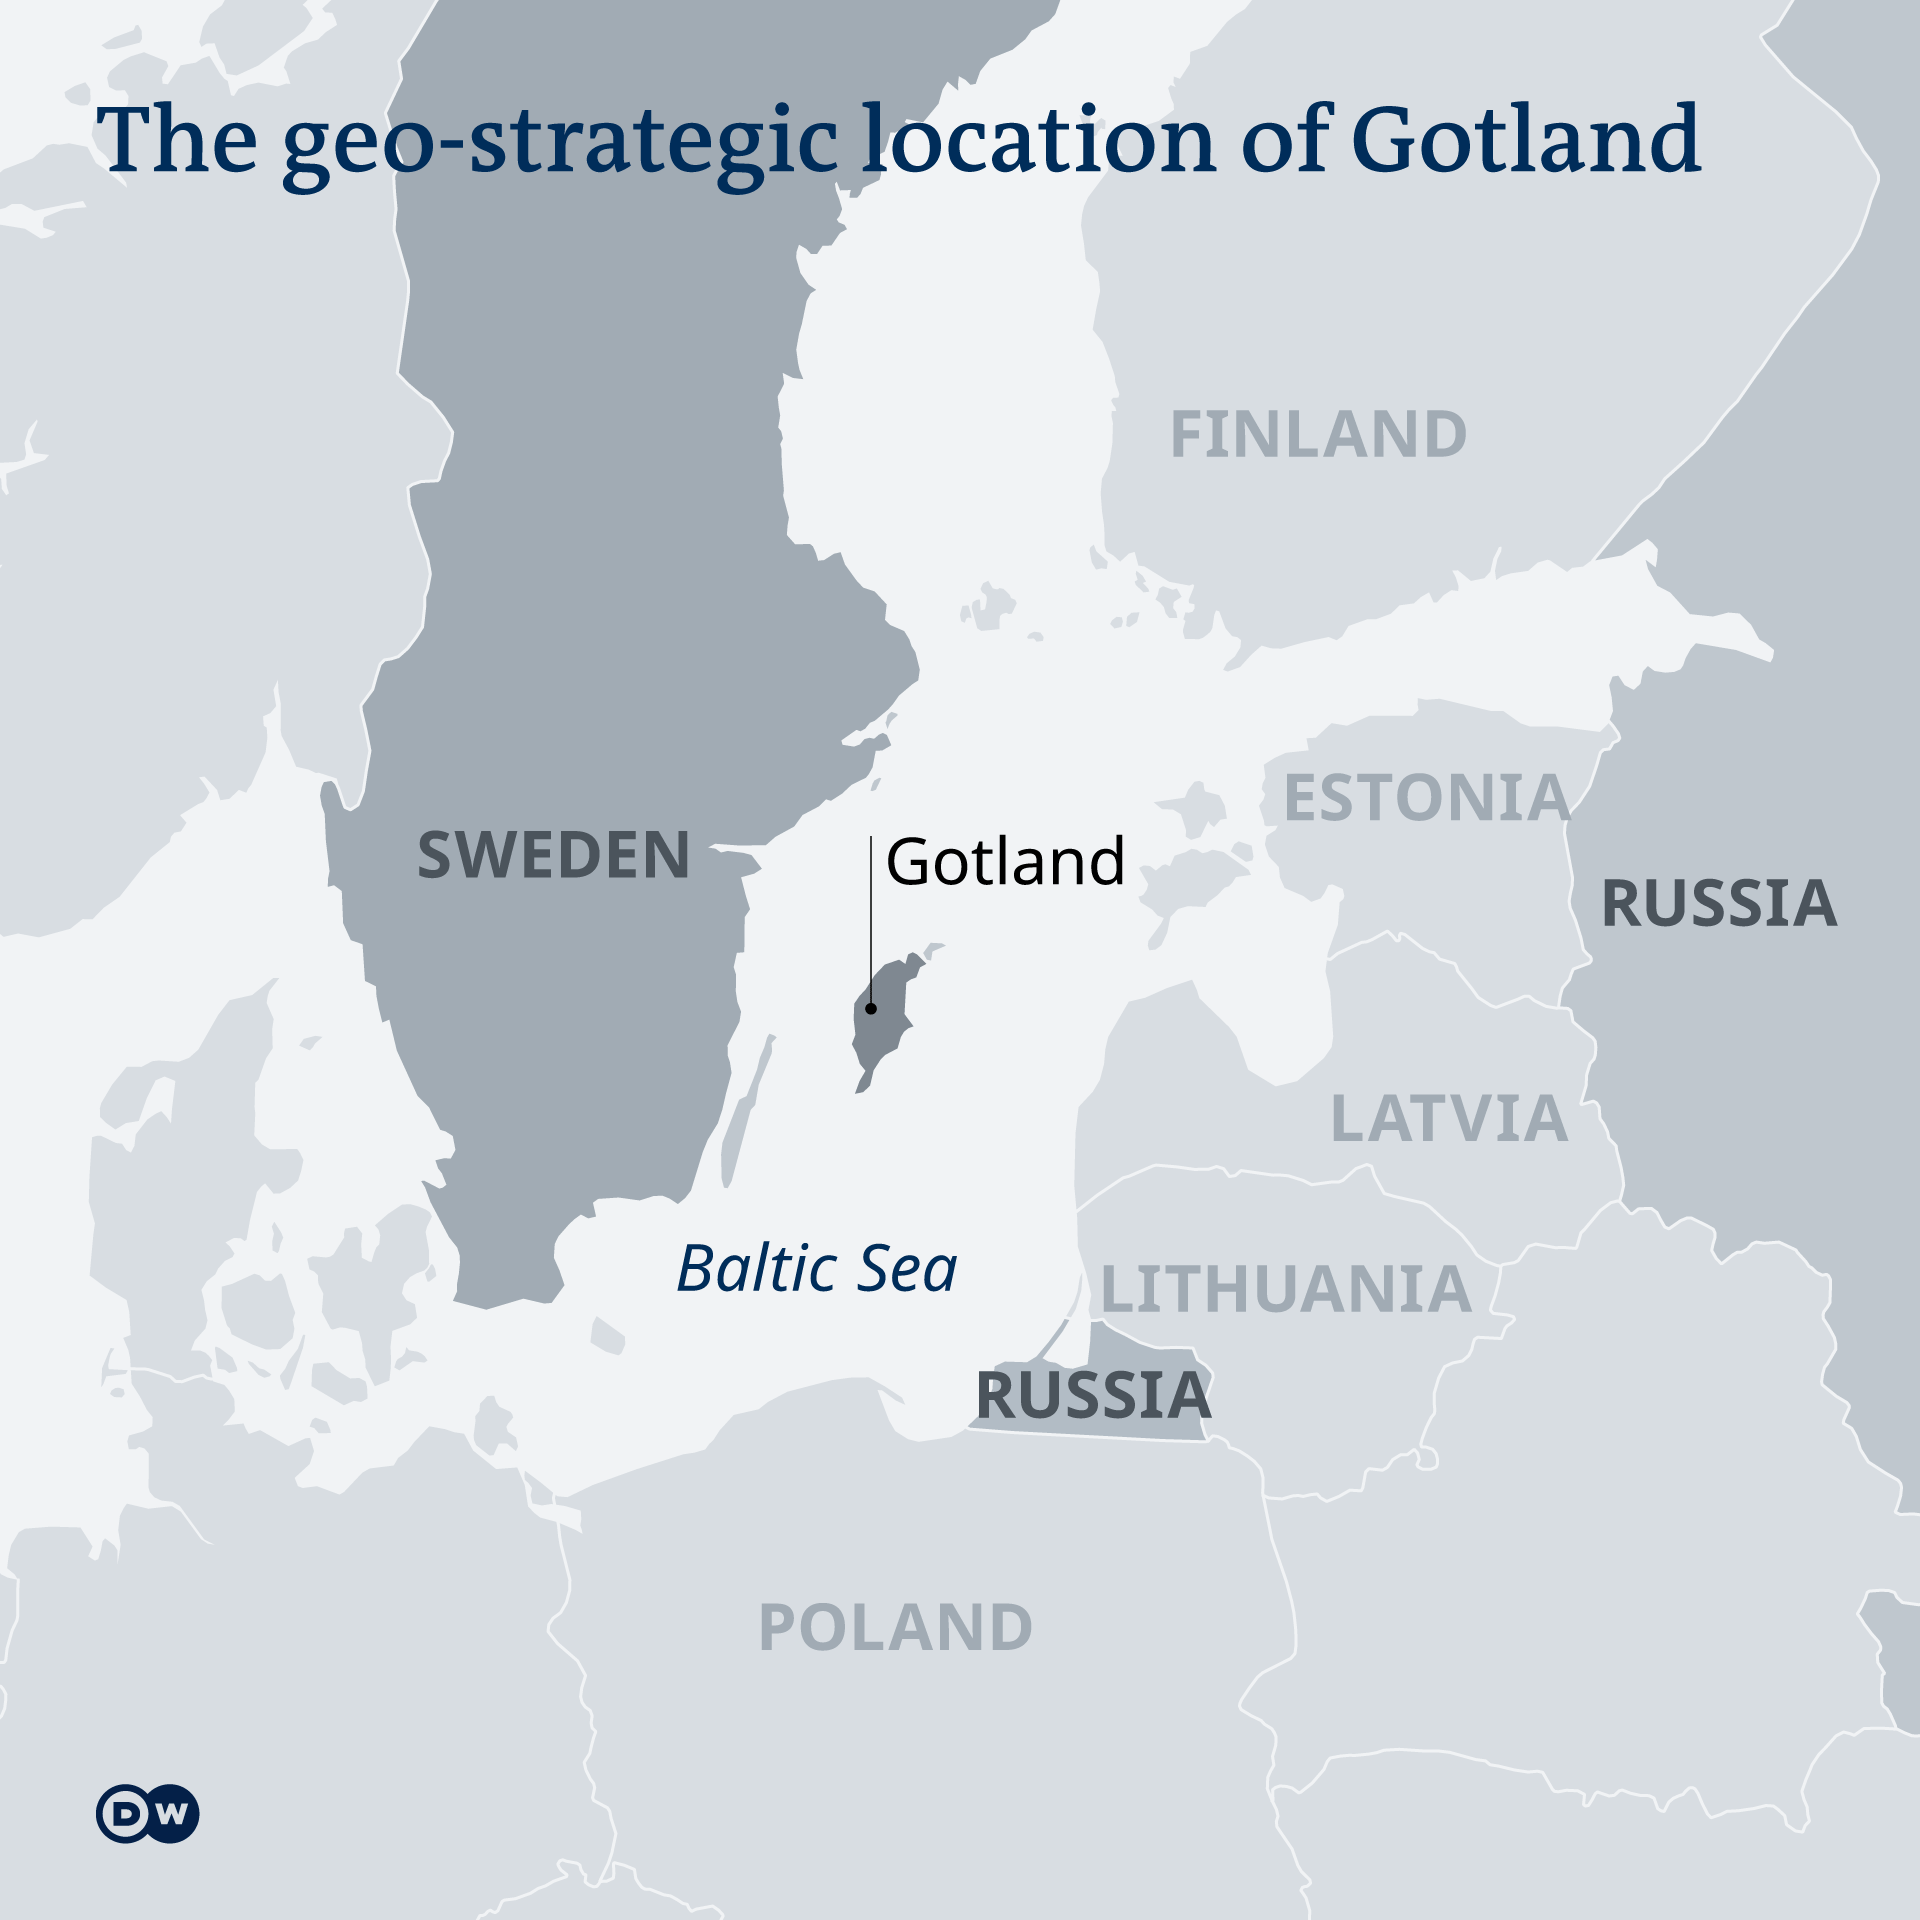 Geostrateški položaj švedskog ostrva Gotland, koje ima ključnu poziciju u Baltičkom moru